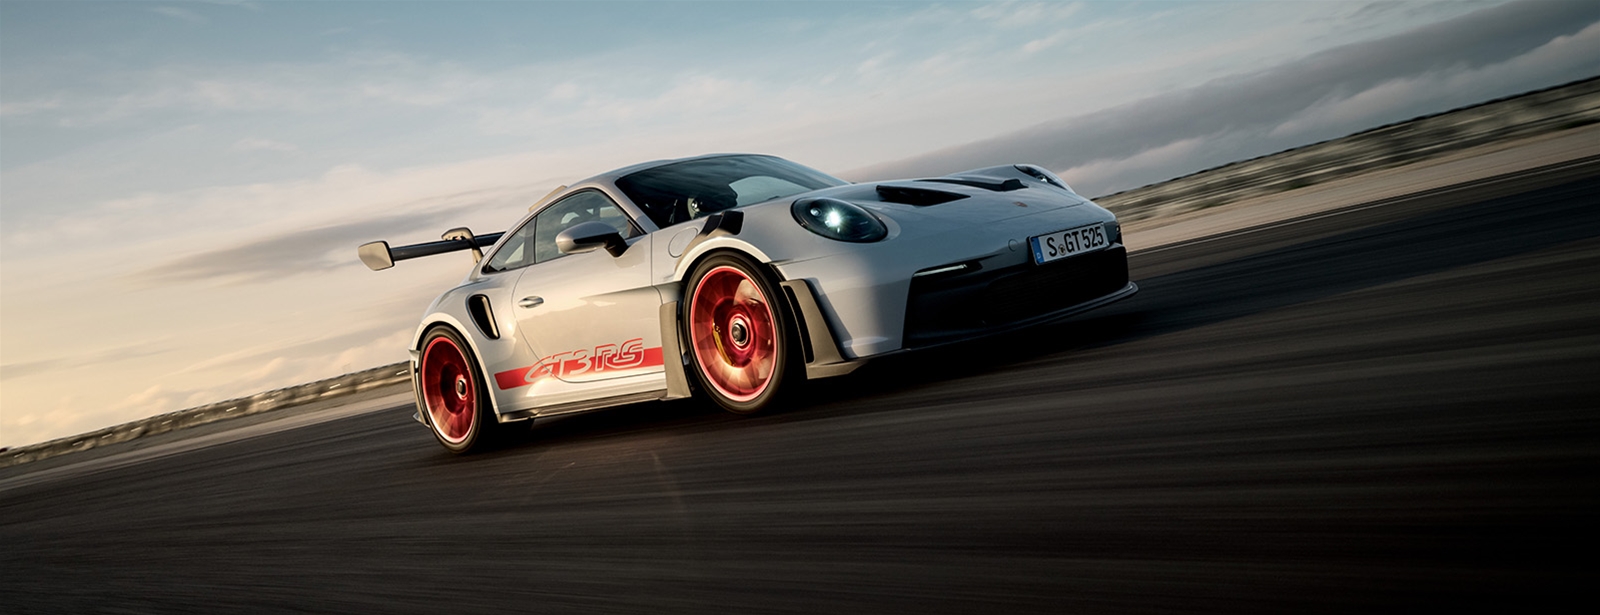 Gebouwd om maximaal te presteren. - De nieuwe Porsche 911 GT3 RS.